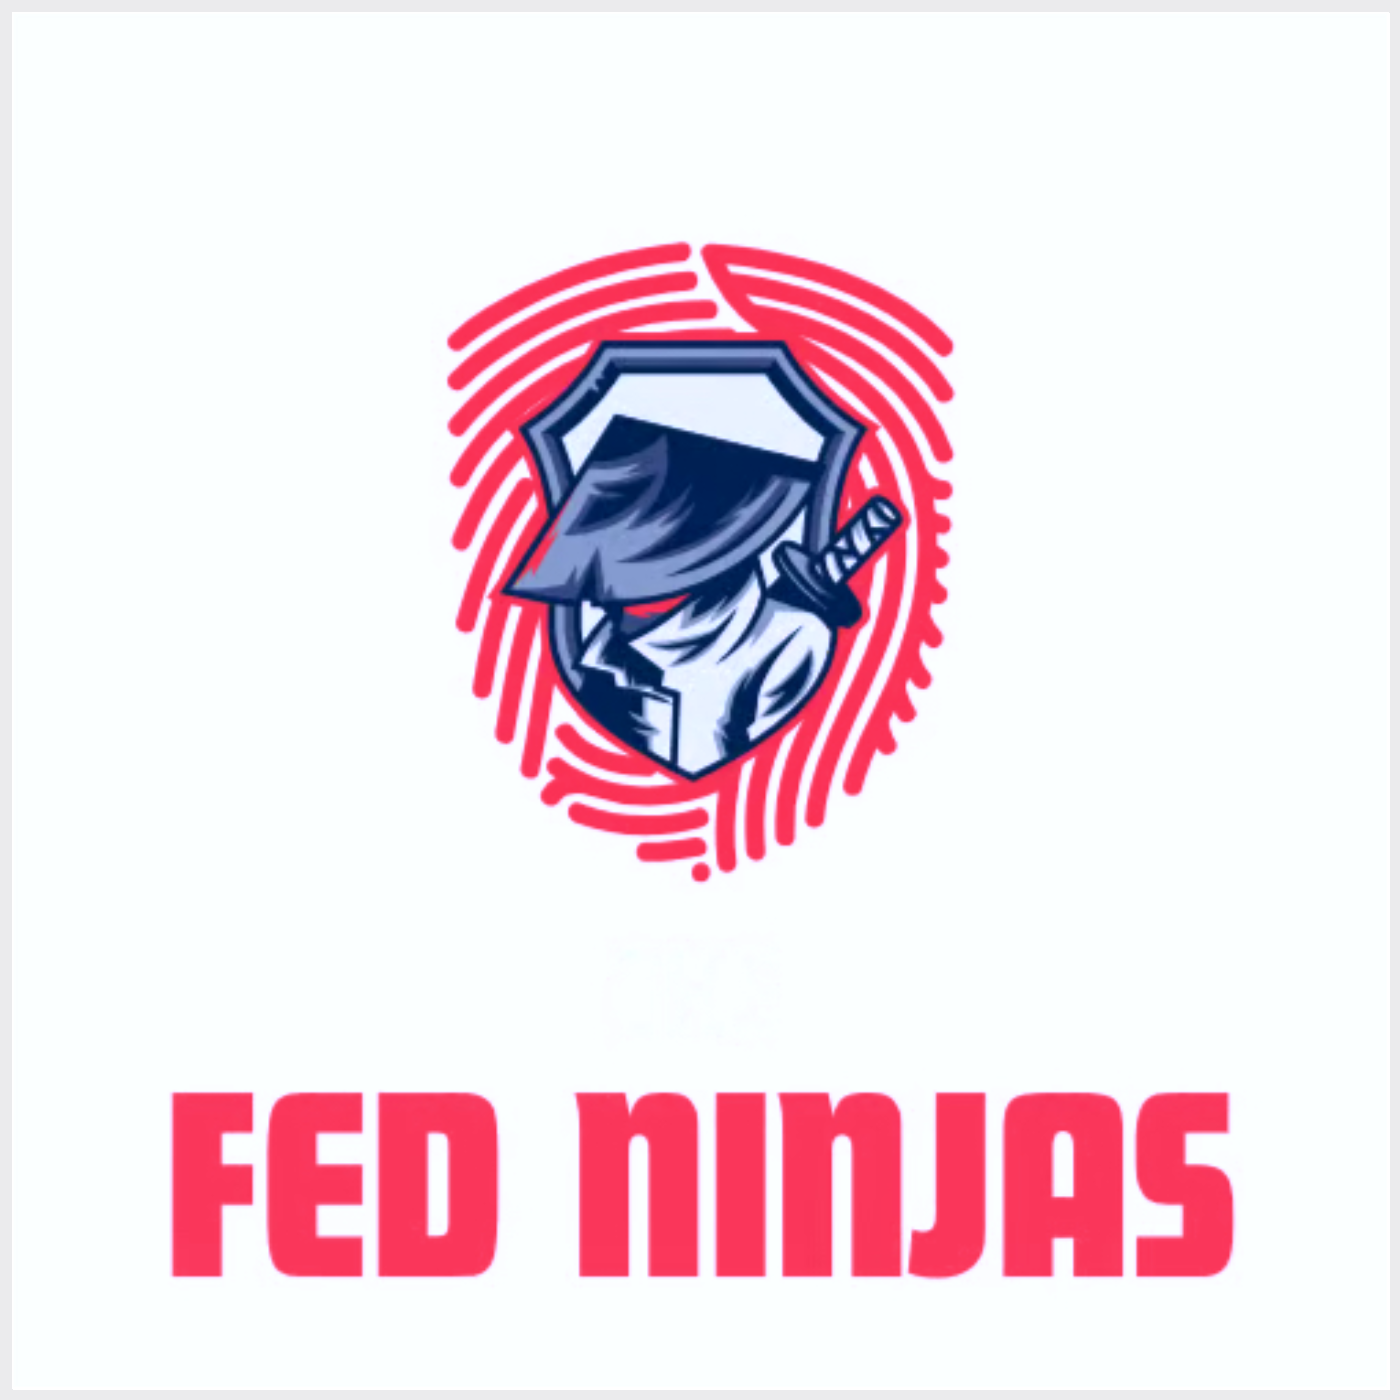 The Fed Ninjas